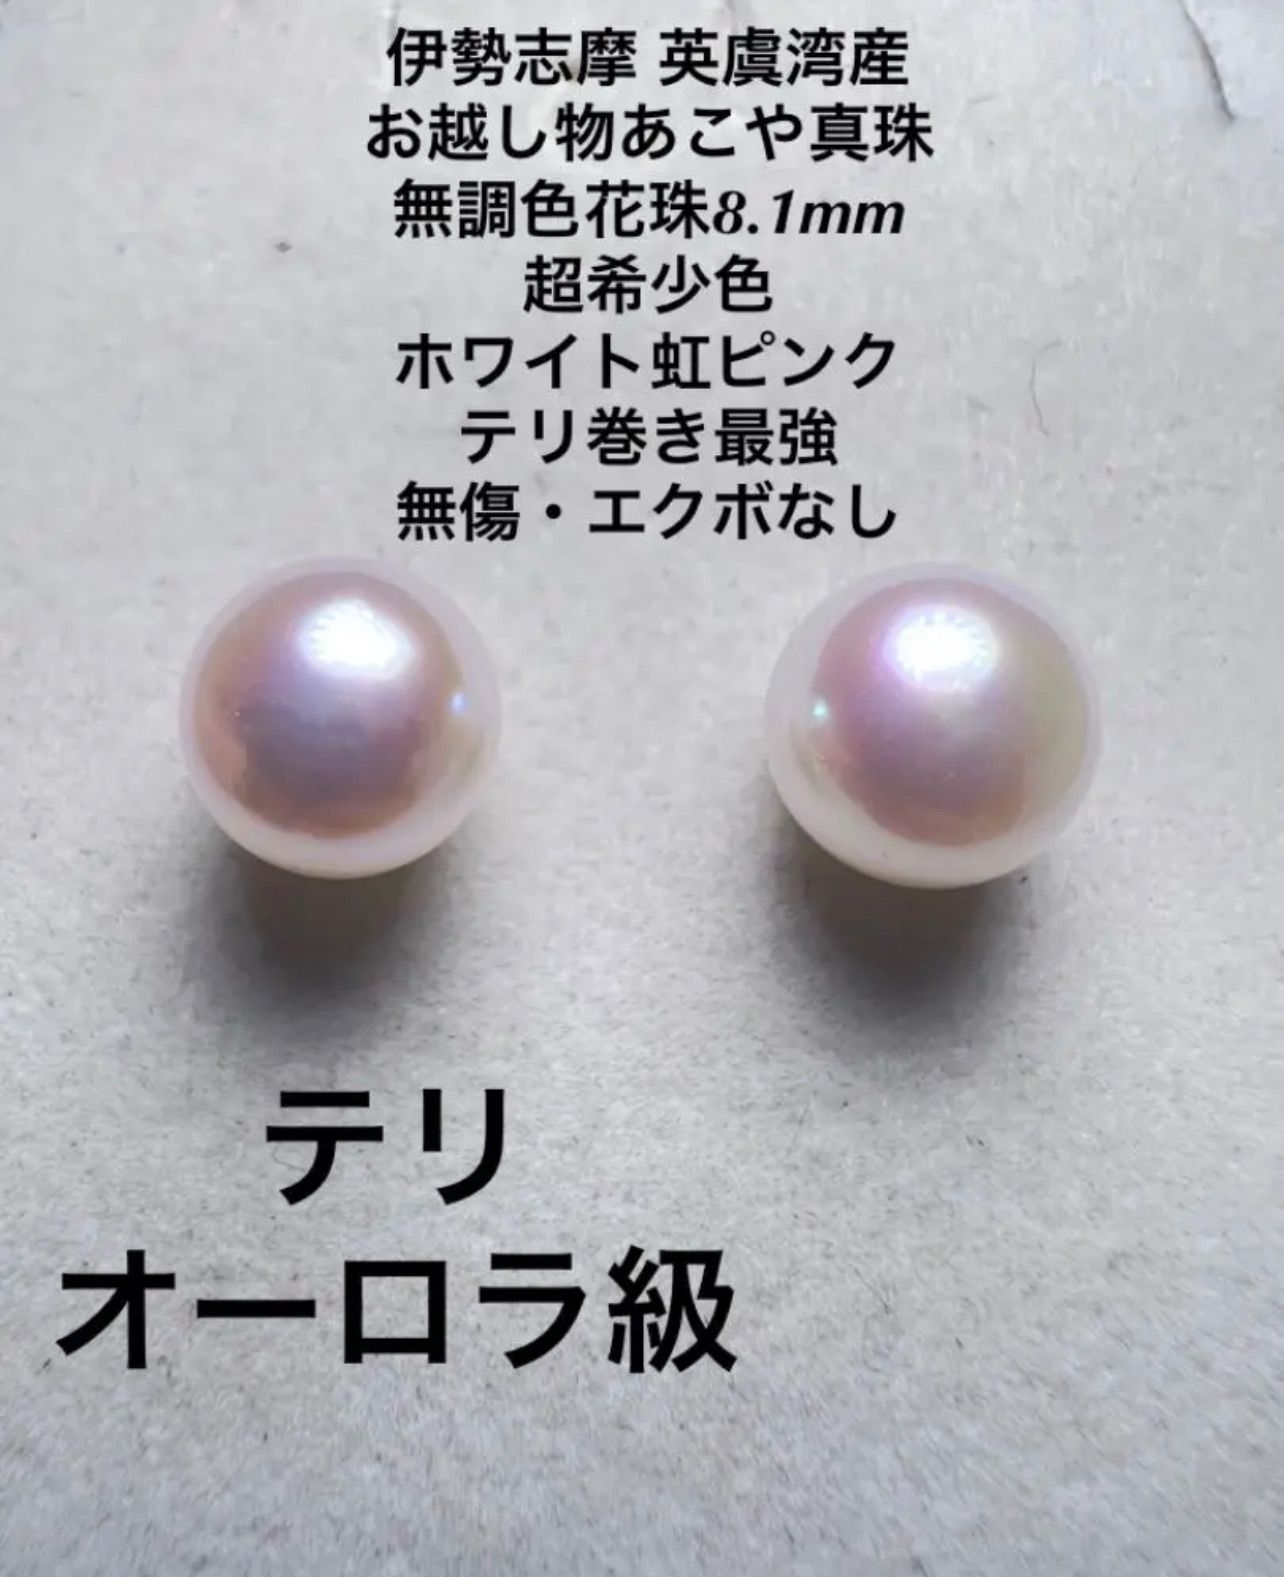 伊勢志摩 英虞湾産 越物あこや真珠 花珠8.1mm ホワイト虹ピンク